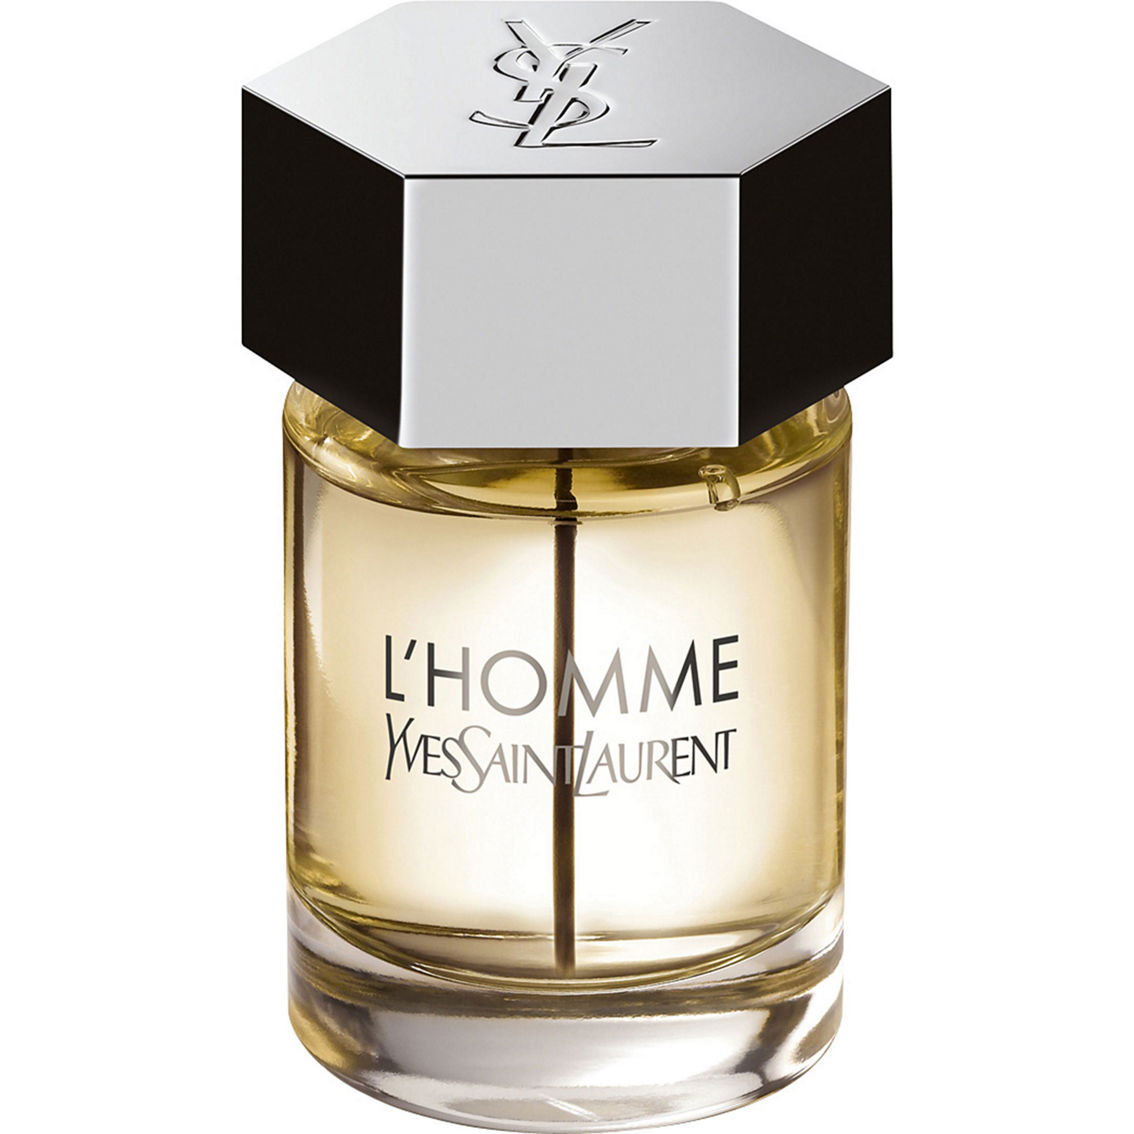 Yves Saint Laurent L'homme Eau De Toilette Spray, Men's Fragrances, Beauty  & Health